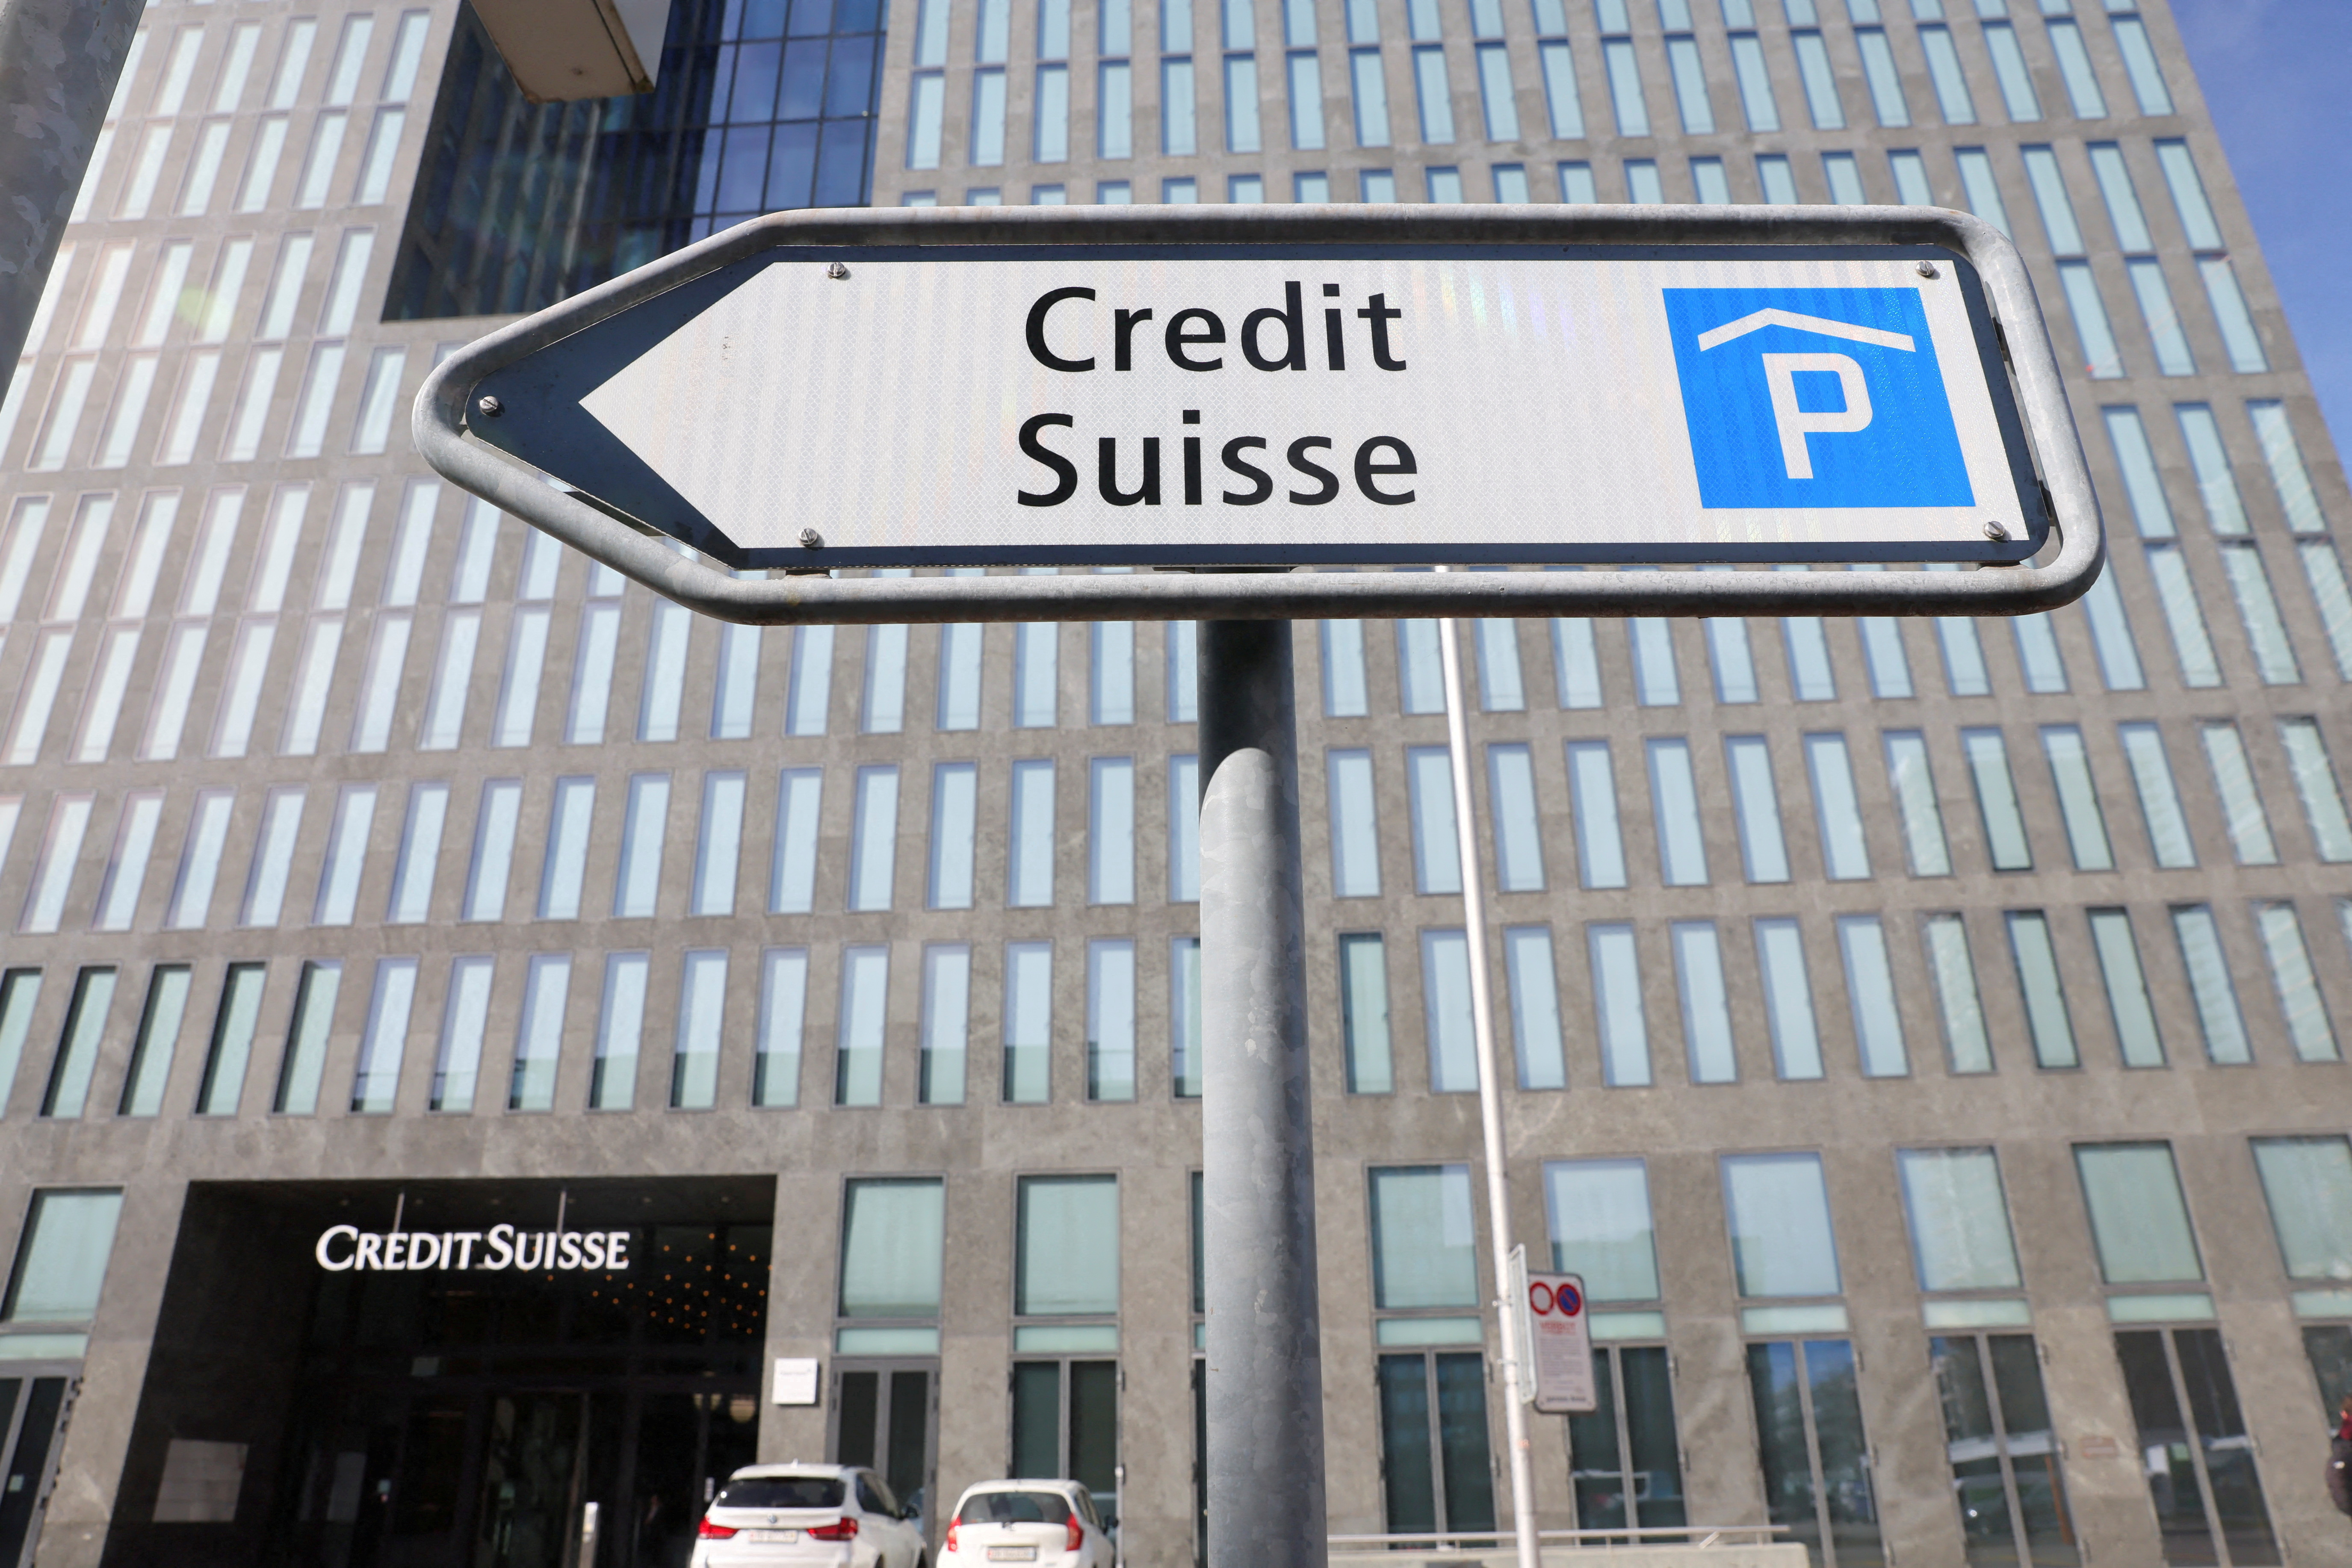 FOTO DE ARCHIVO: Una vista muestra una señalización del banco suizo Credit Suisse frente a un edificio de oficinas en Zúrich, Suiza 